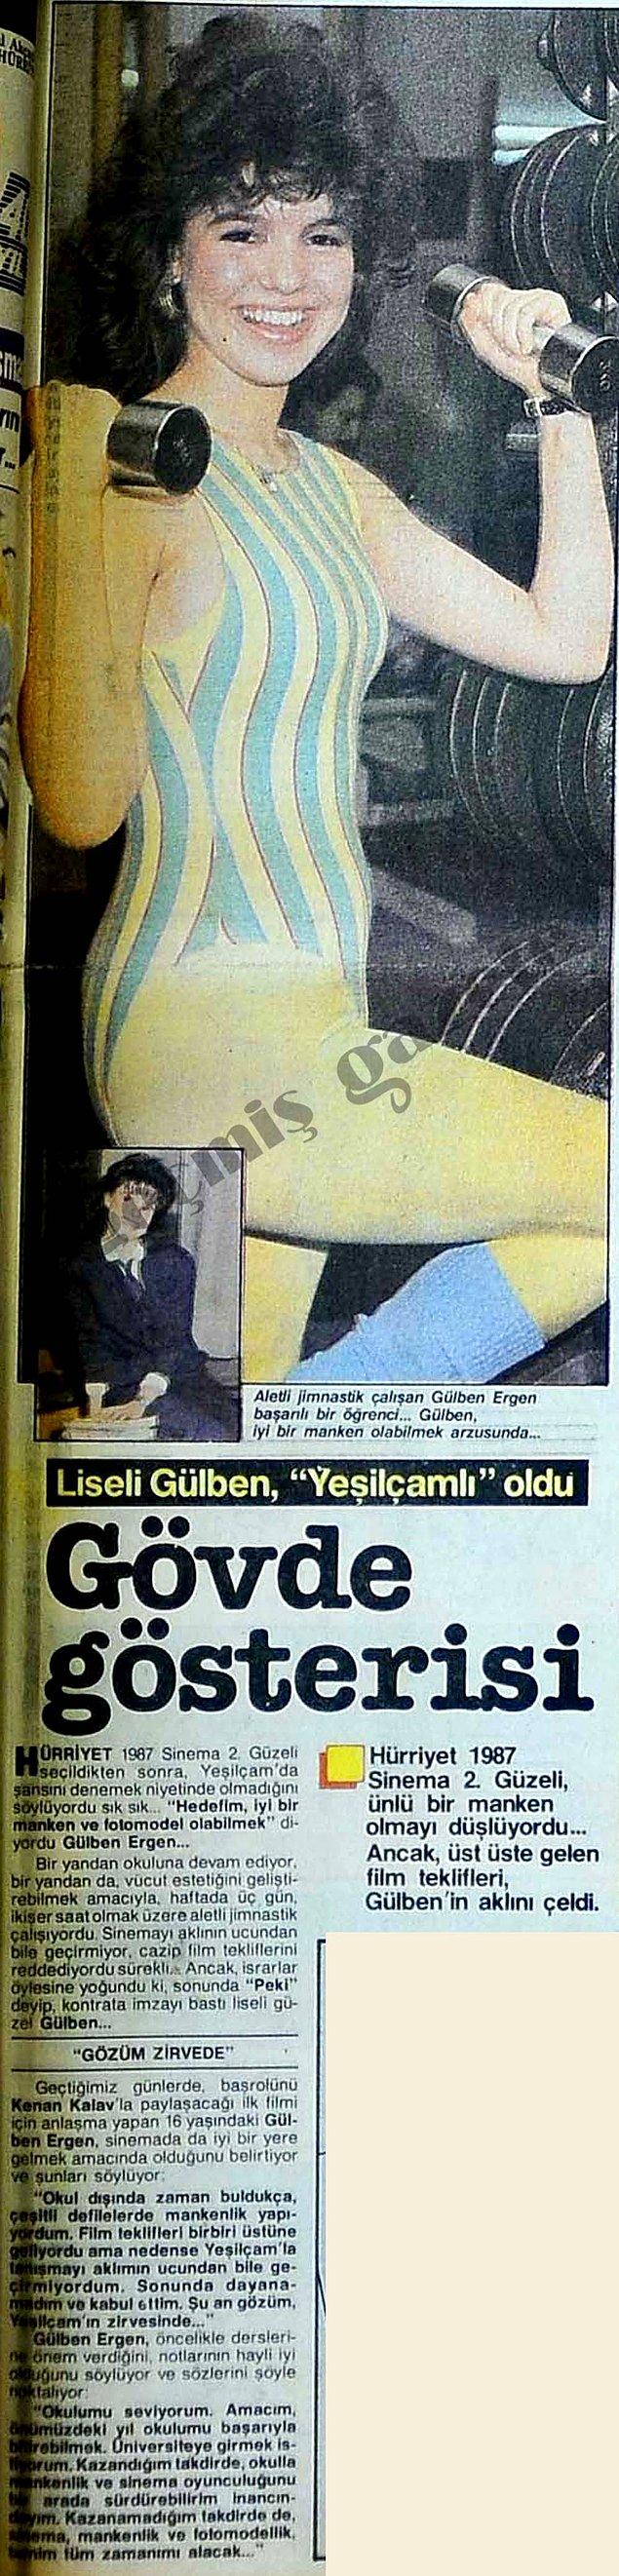 1988 (Hürriyet): Gülben Ergen'in üniversiteyi kazanamazsa mankenlik yapacağını söylemesi